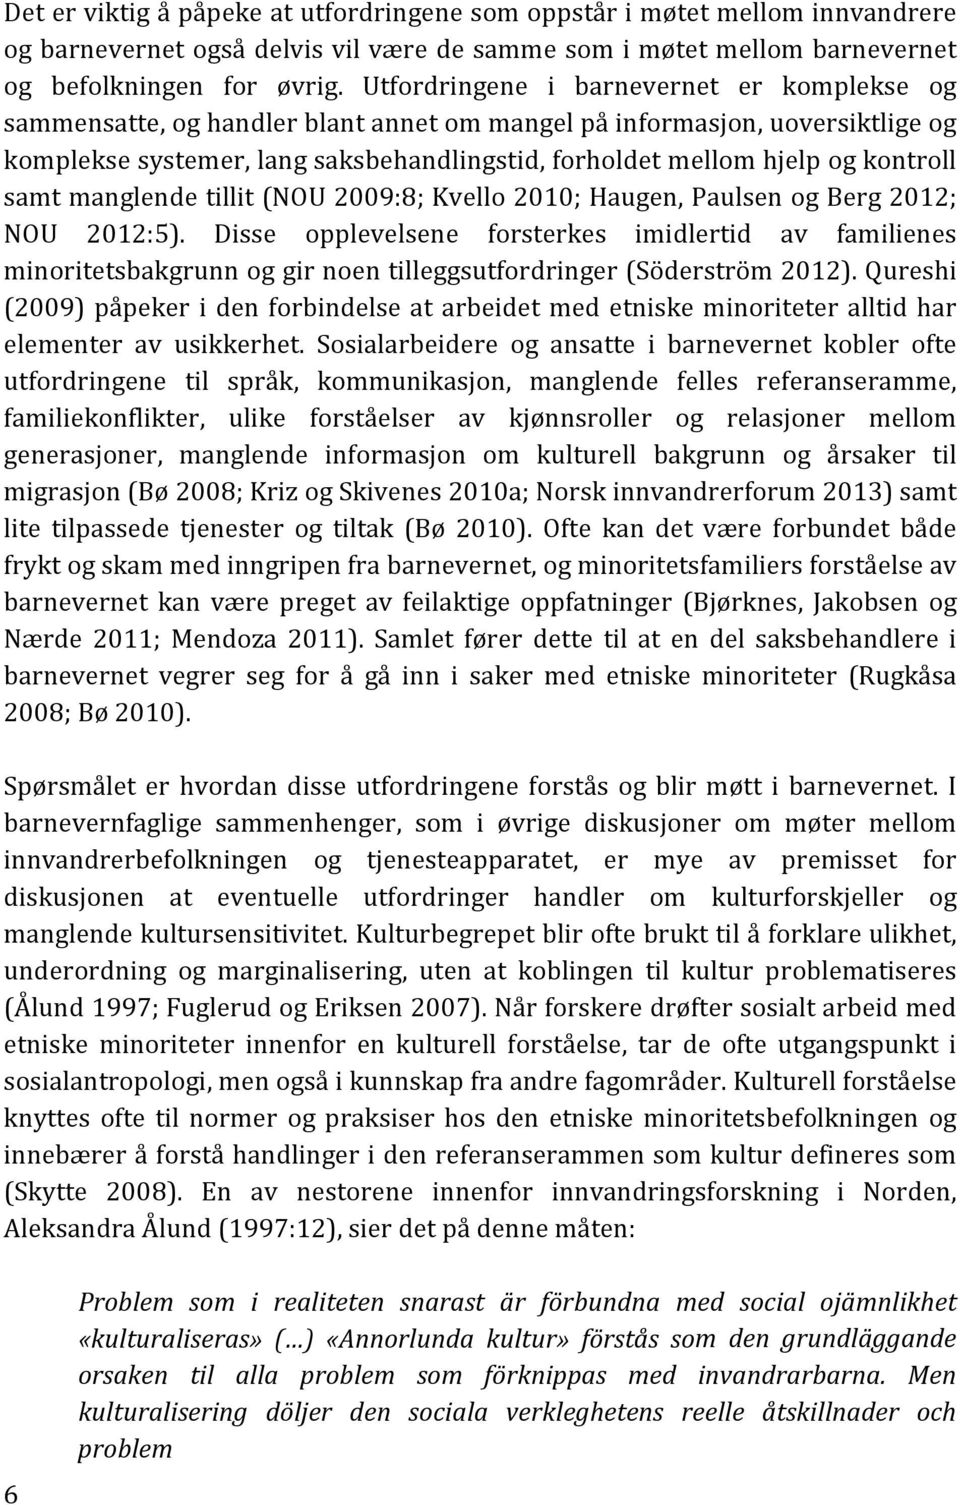 kontroll samt manglende tillit (NOU 2009:8; Kvello 2010; Haugen, Paulsen og Berg 2012; NOU 2012:5).